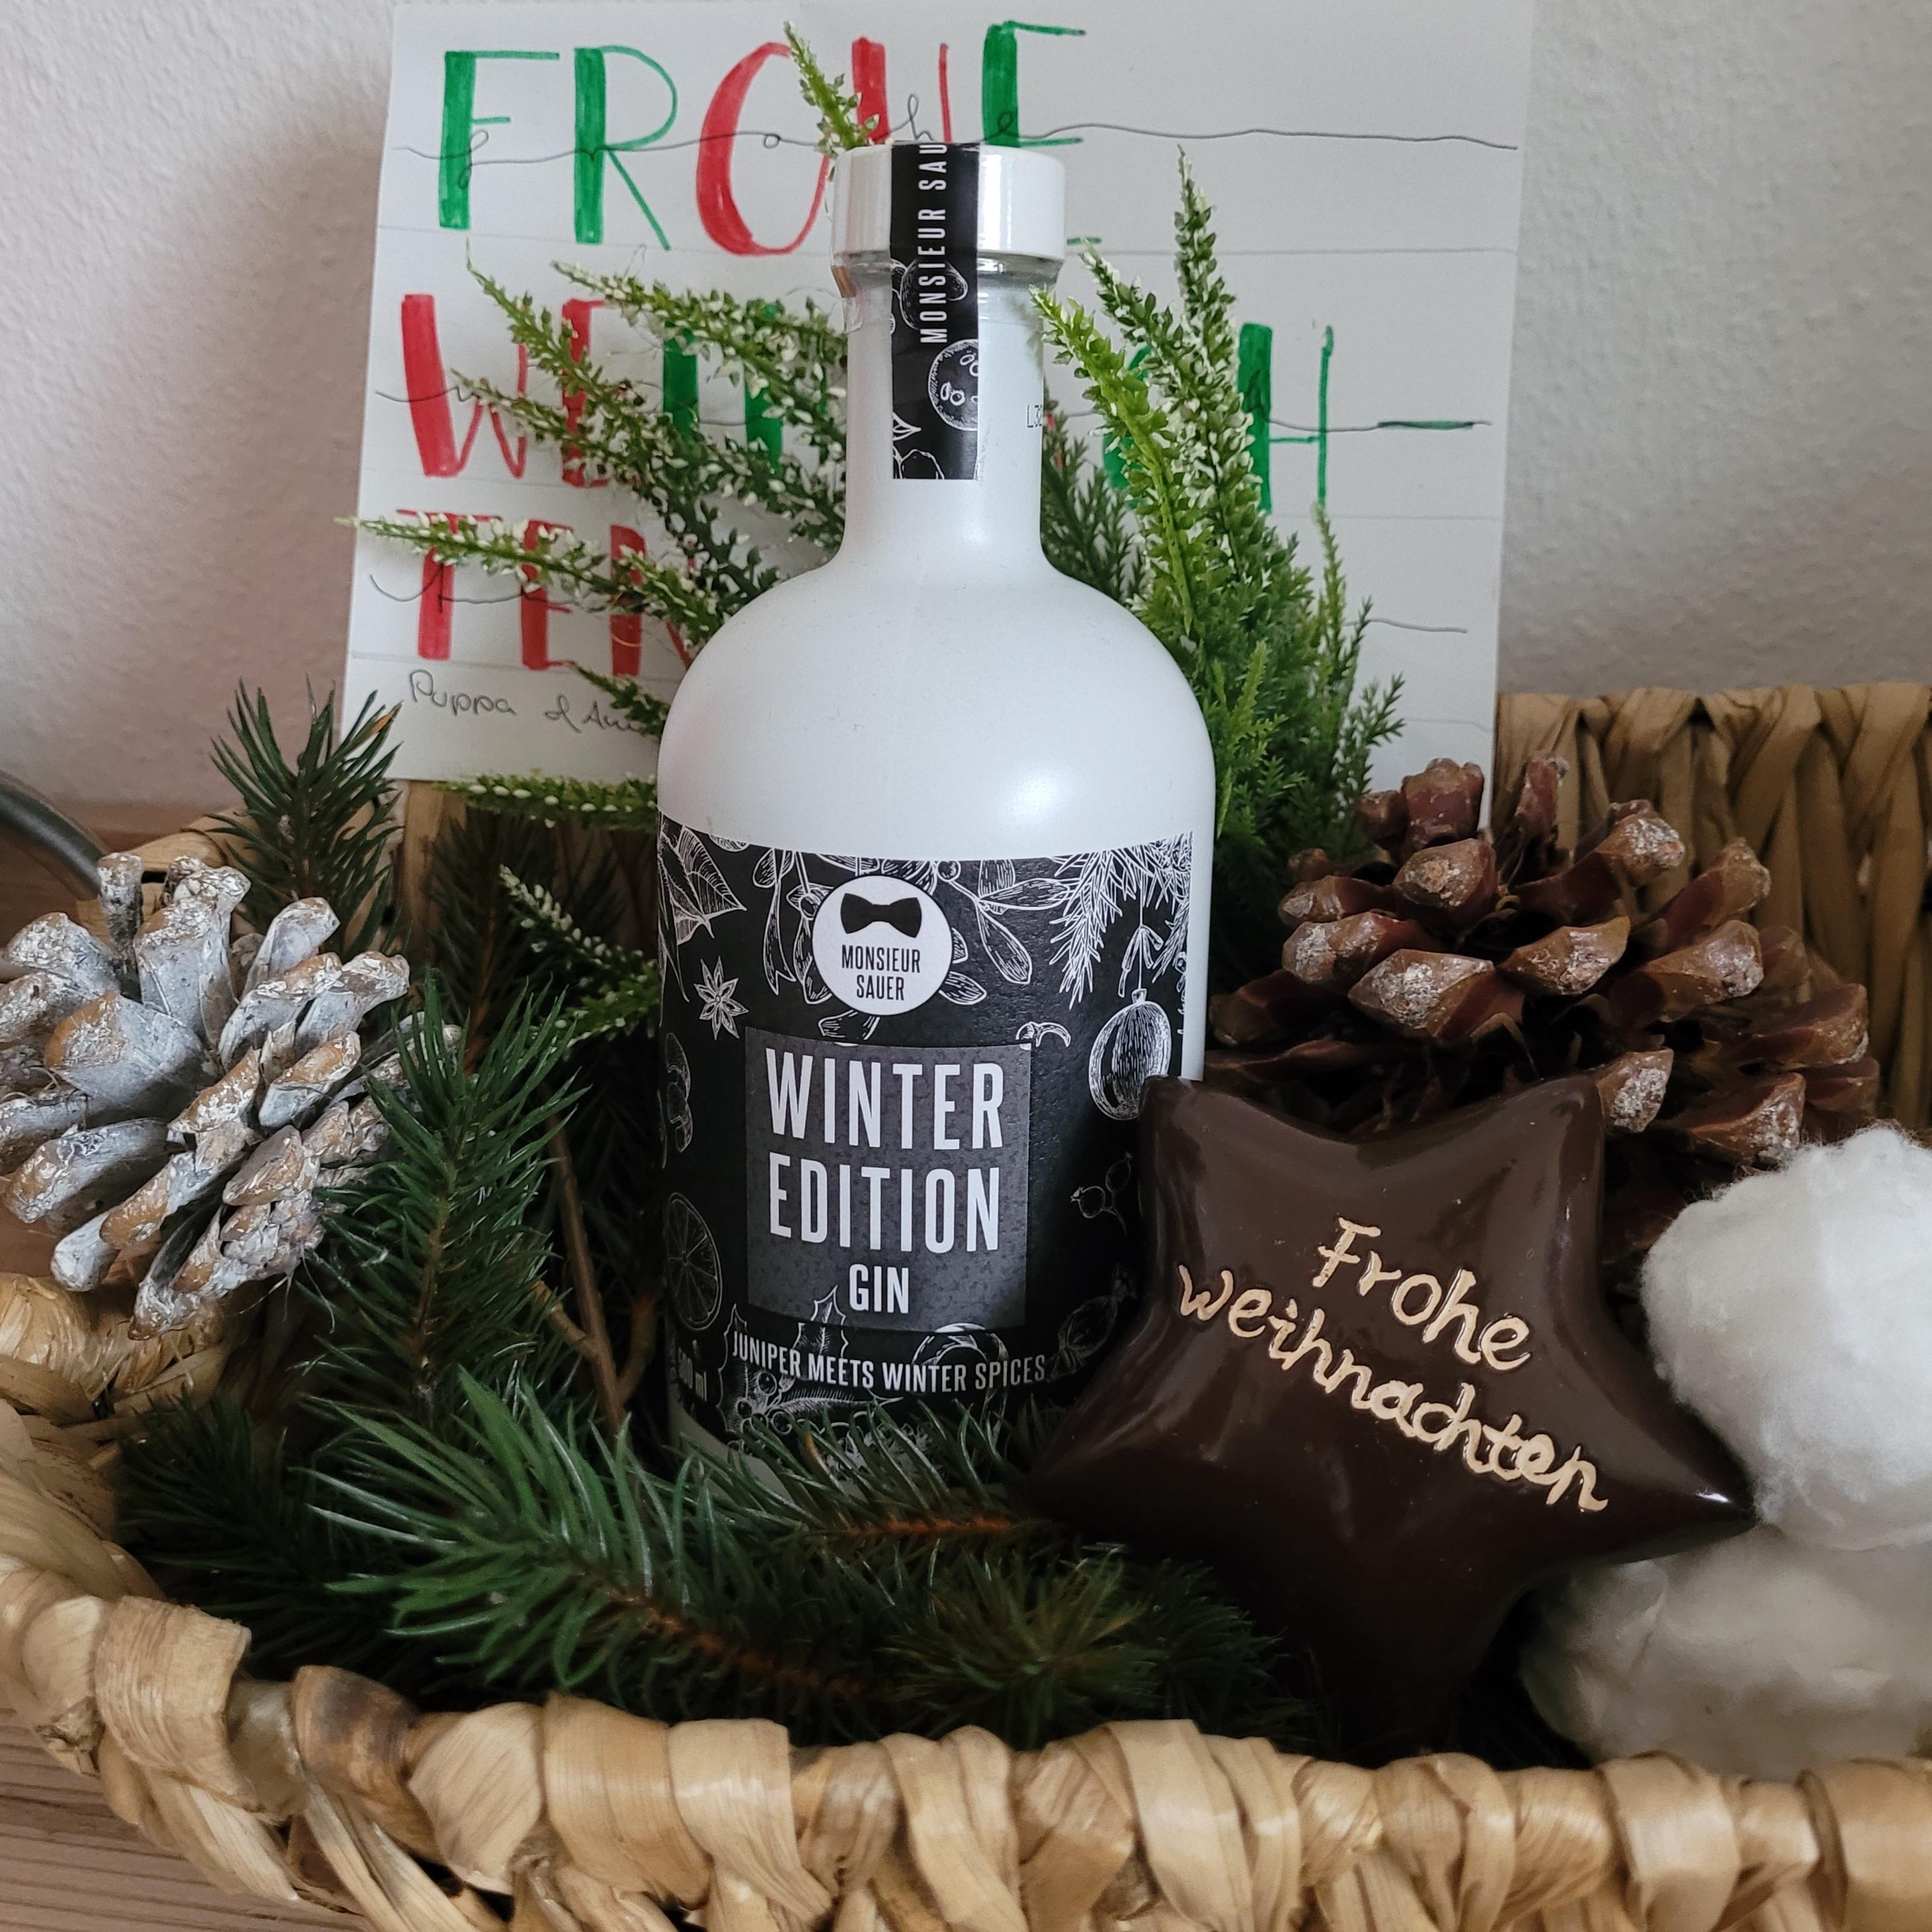 Ein Gin unterm Baum darf auch nicht fehlen!

#Gin #christmasgiveaway #geschenke 